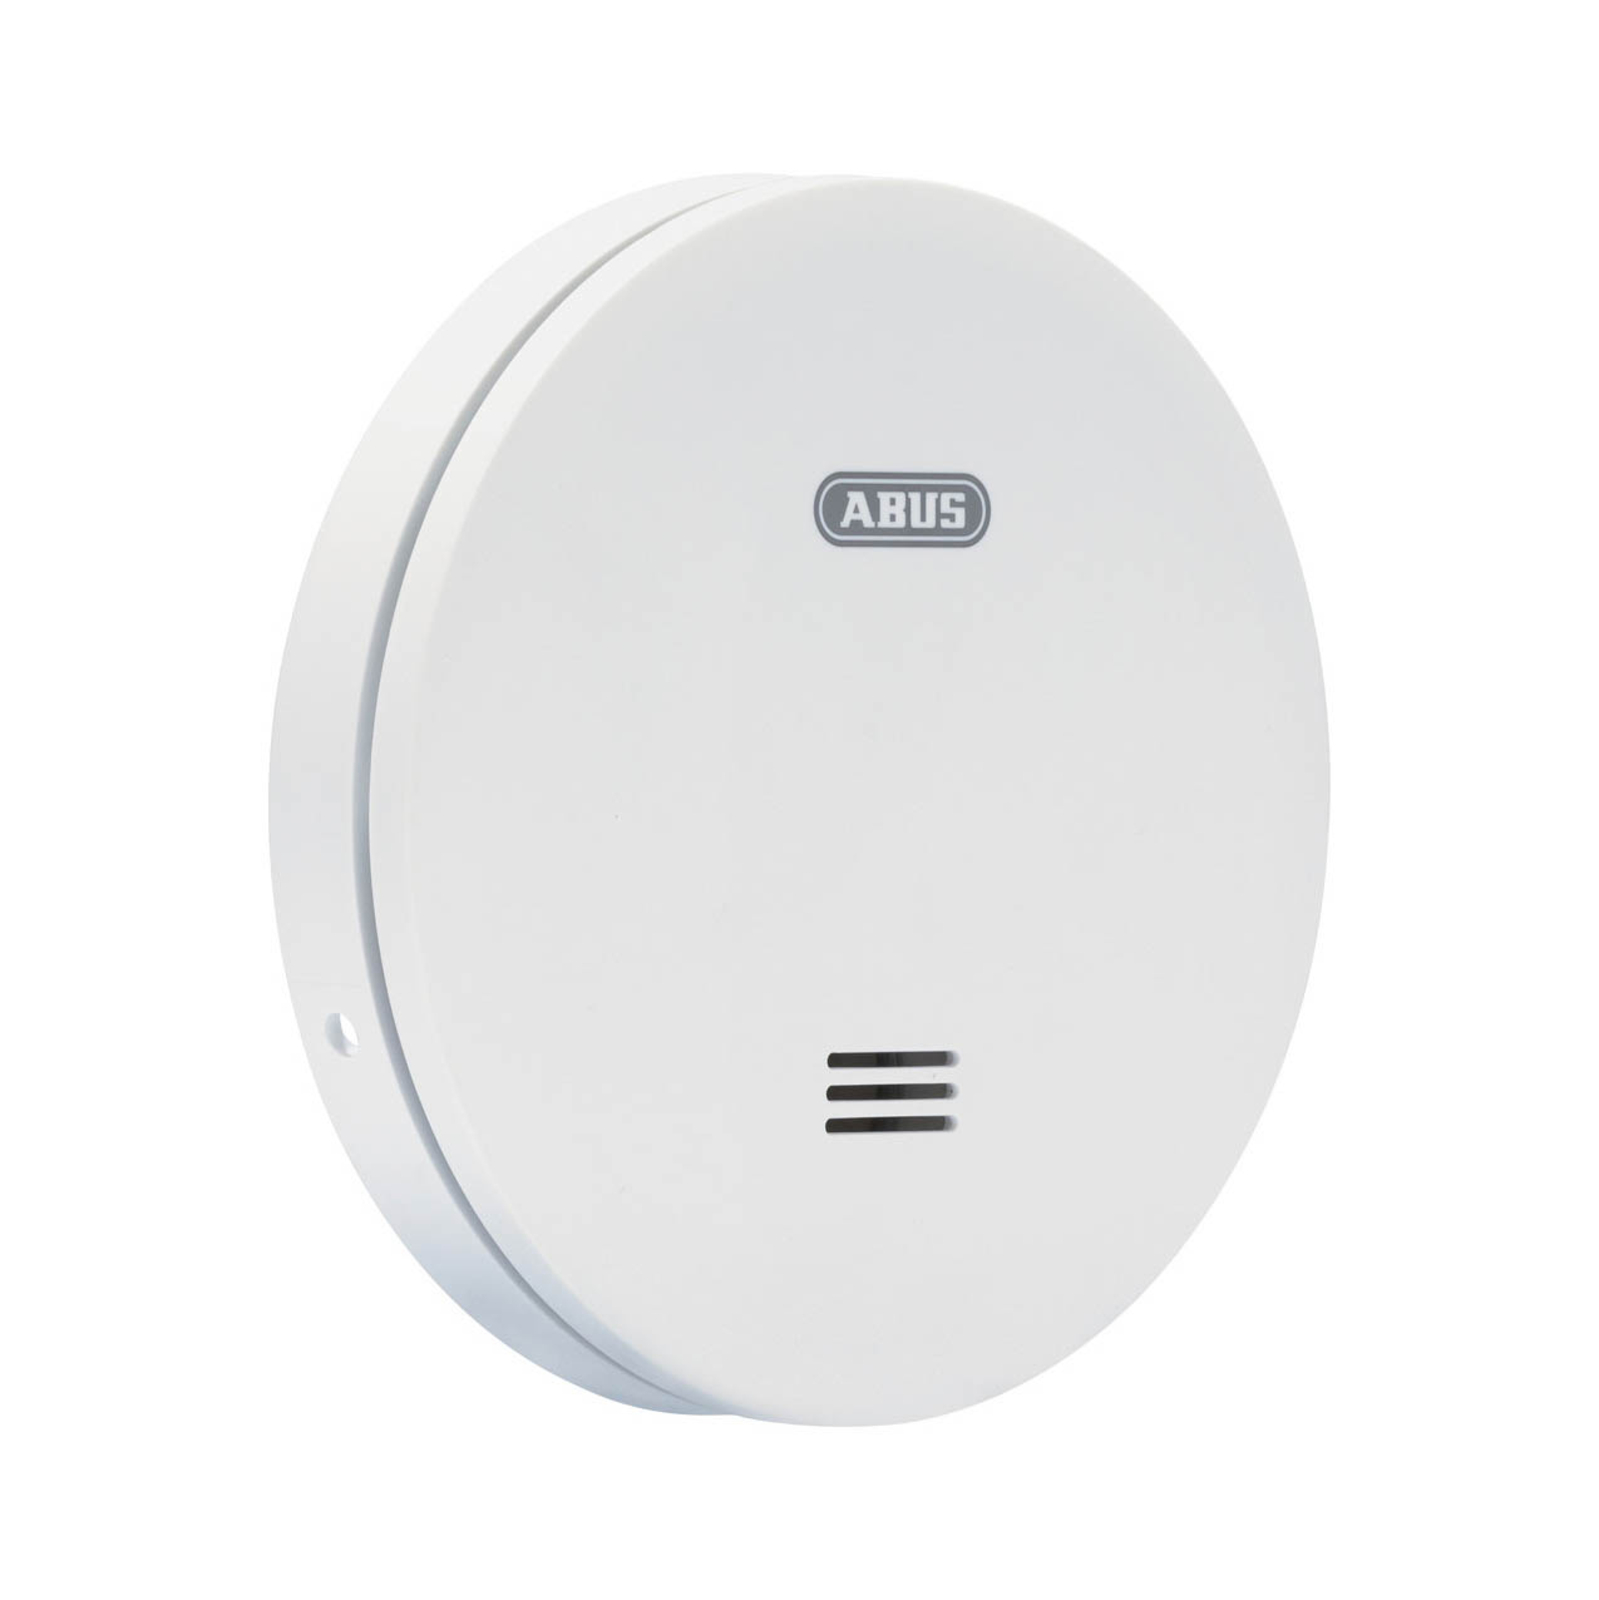 ABUS RWM160 smoke alarm, white, Ø 11.5 cm